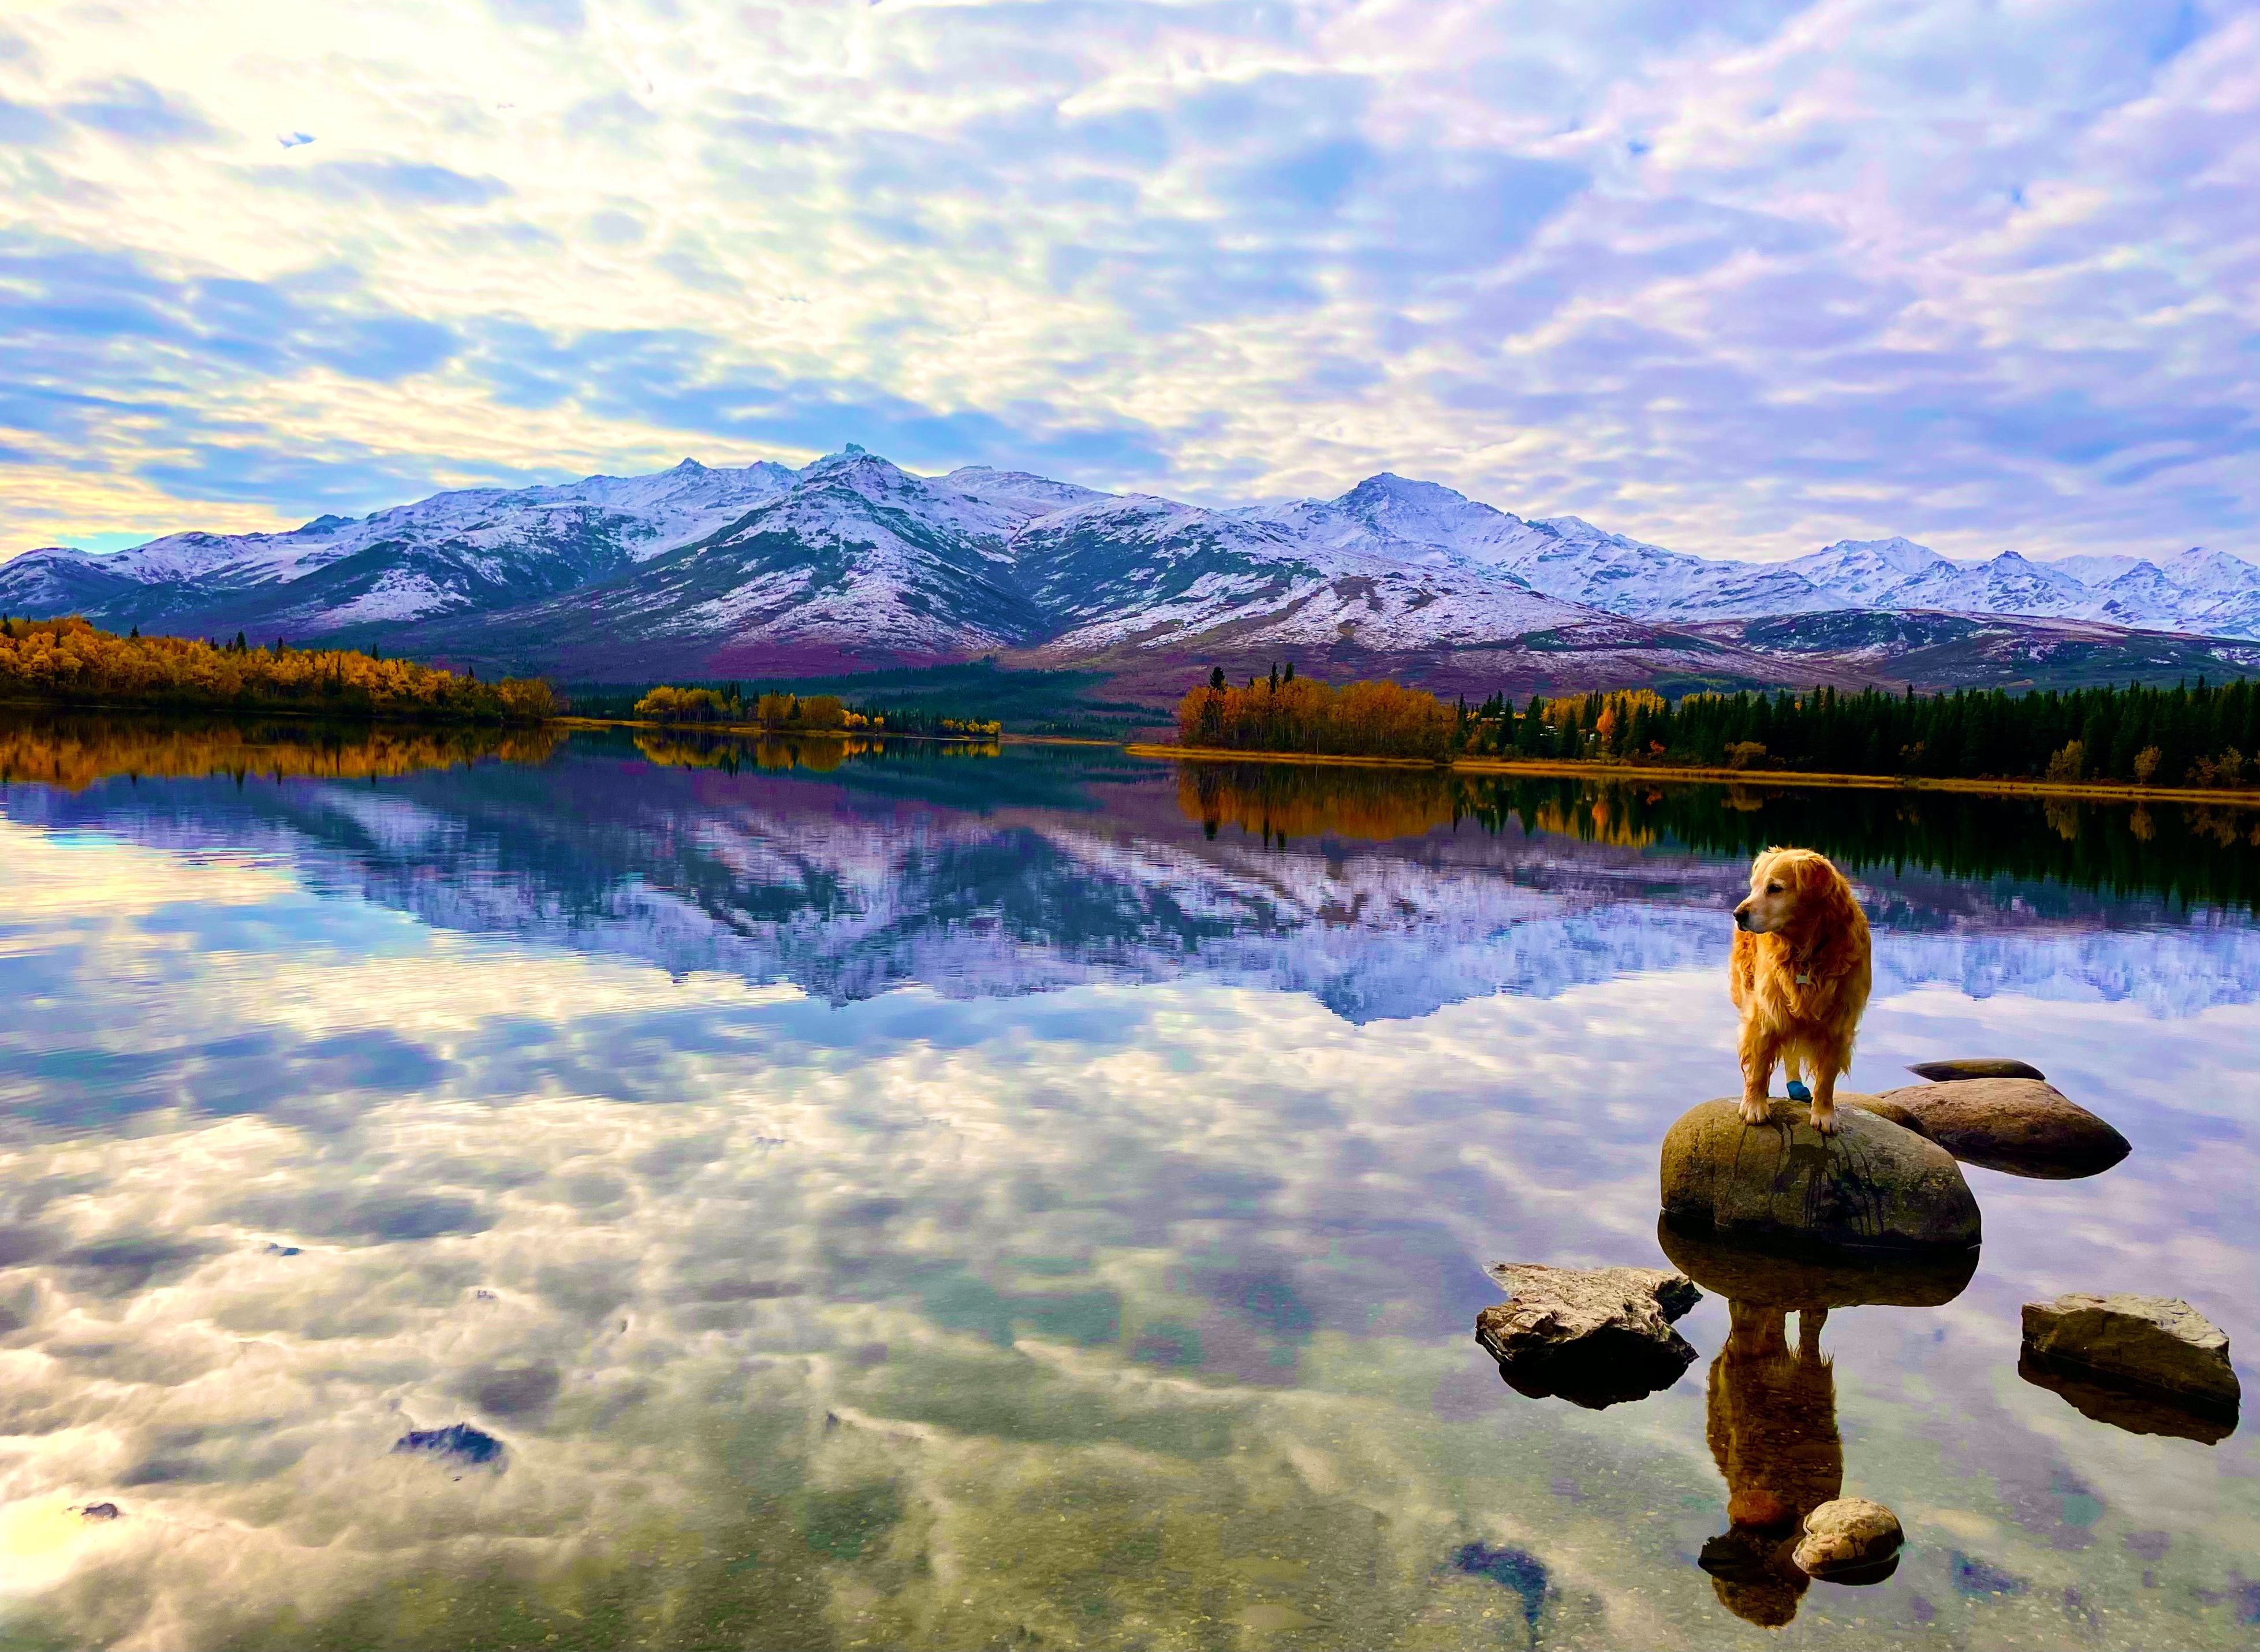 Golden Retriever in Alaska on lake